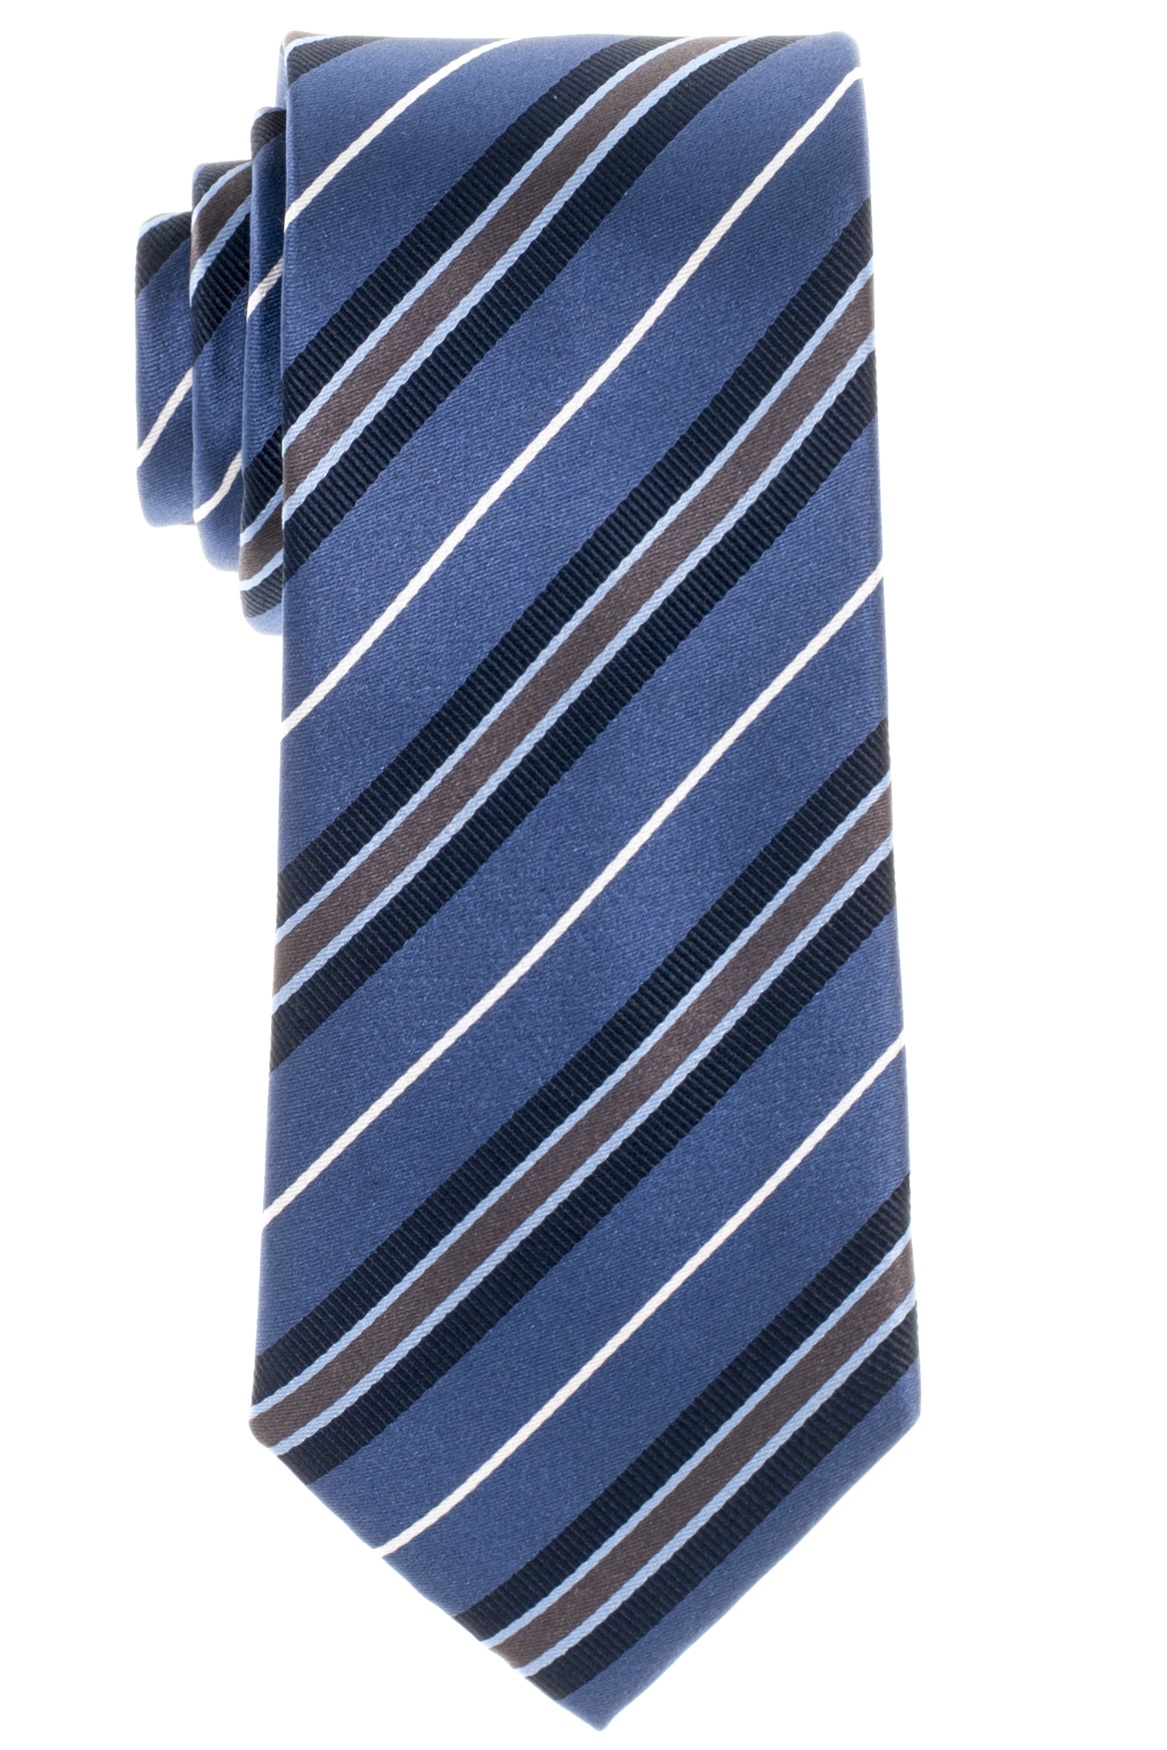 Gestreifte Eterna Krawatte in Olymp grau-braun 72 und Hemden blau ETERNA cm Extra weiß + | Lang 68 marine und